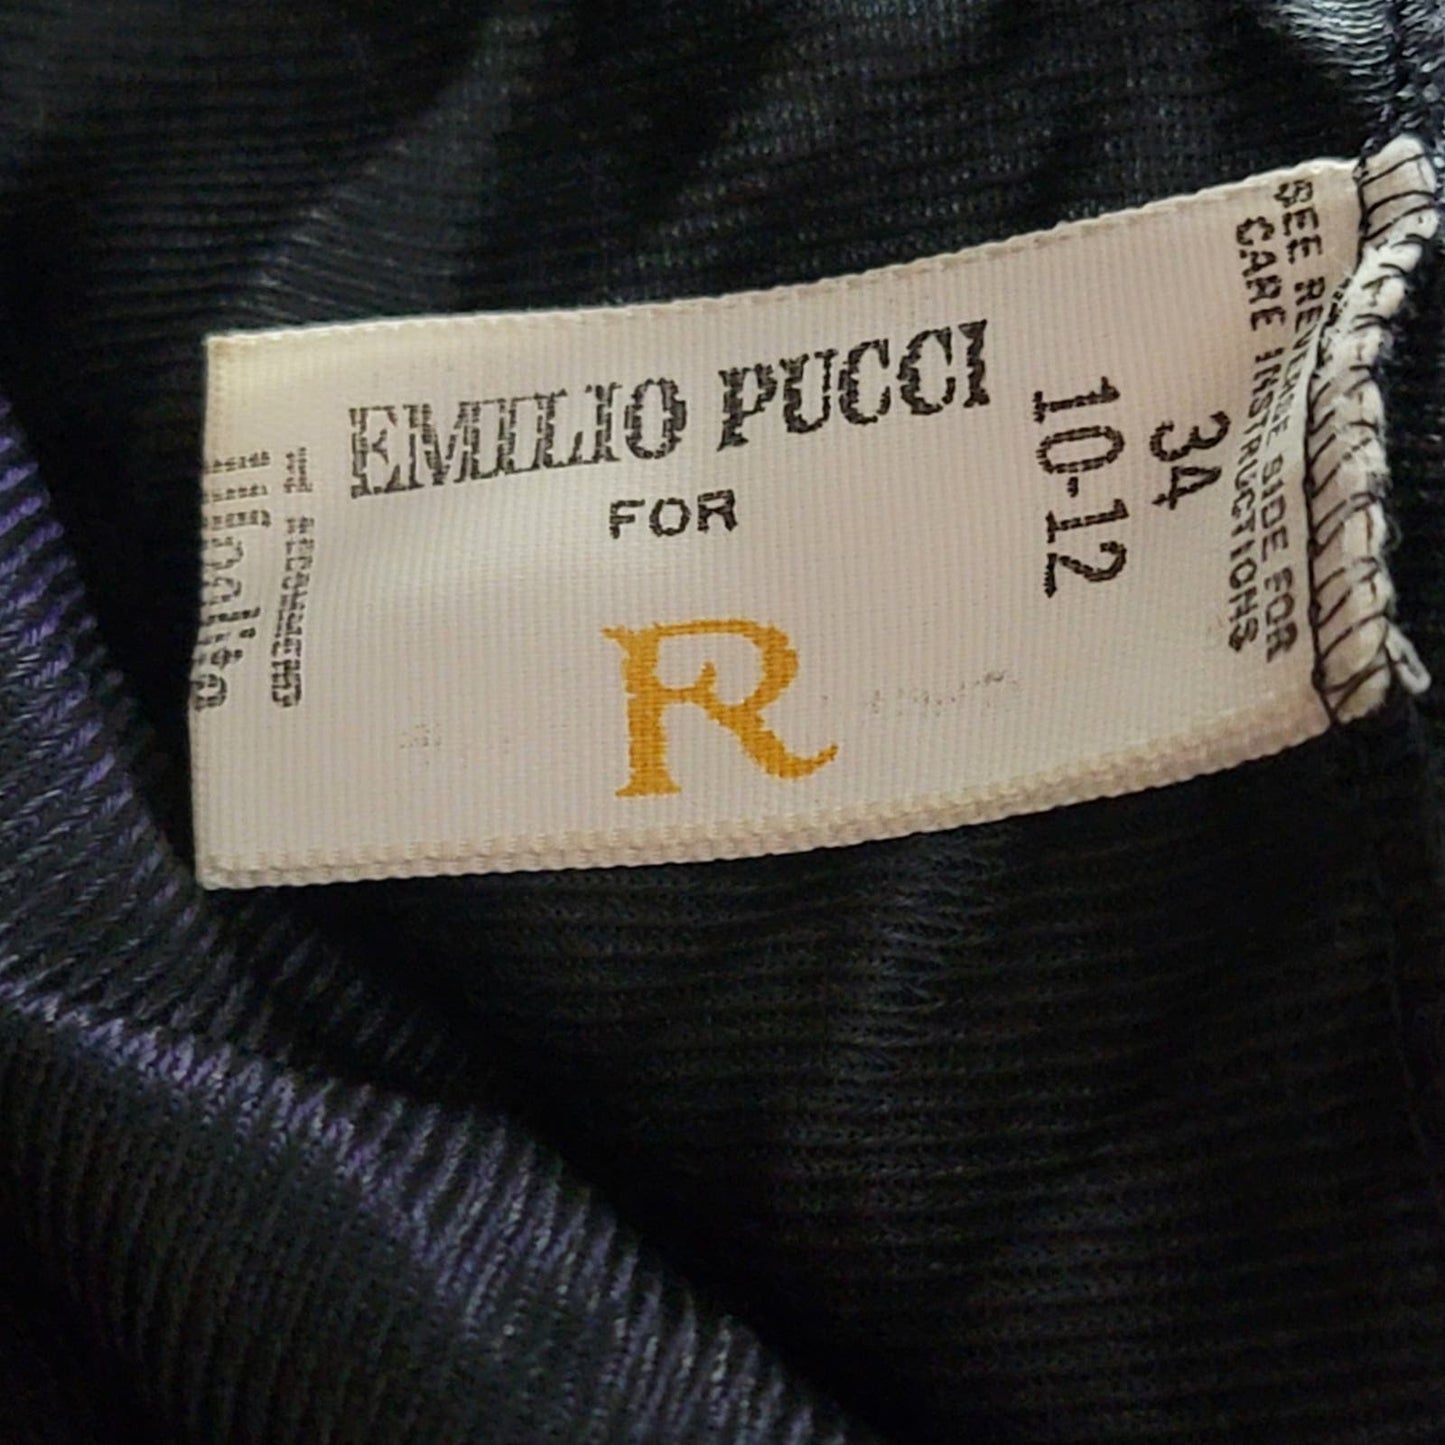 Vtg 1960s Emilio Pucci Formfit Rogers Black Lace Teddy Bodysuit Romper Lingerie